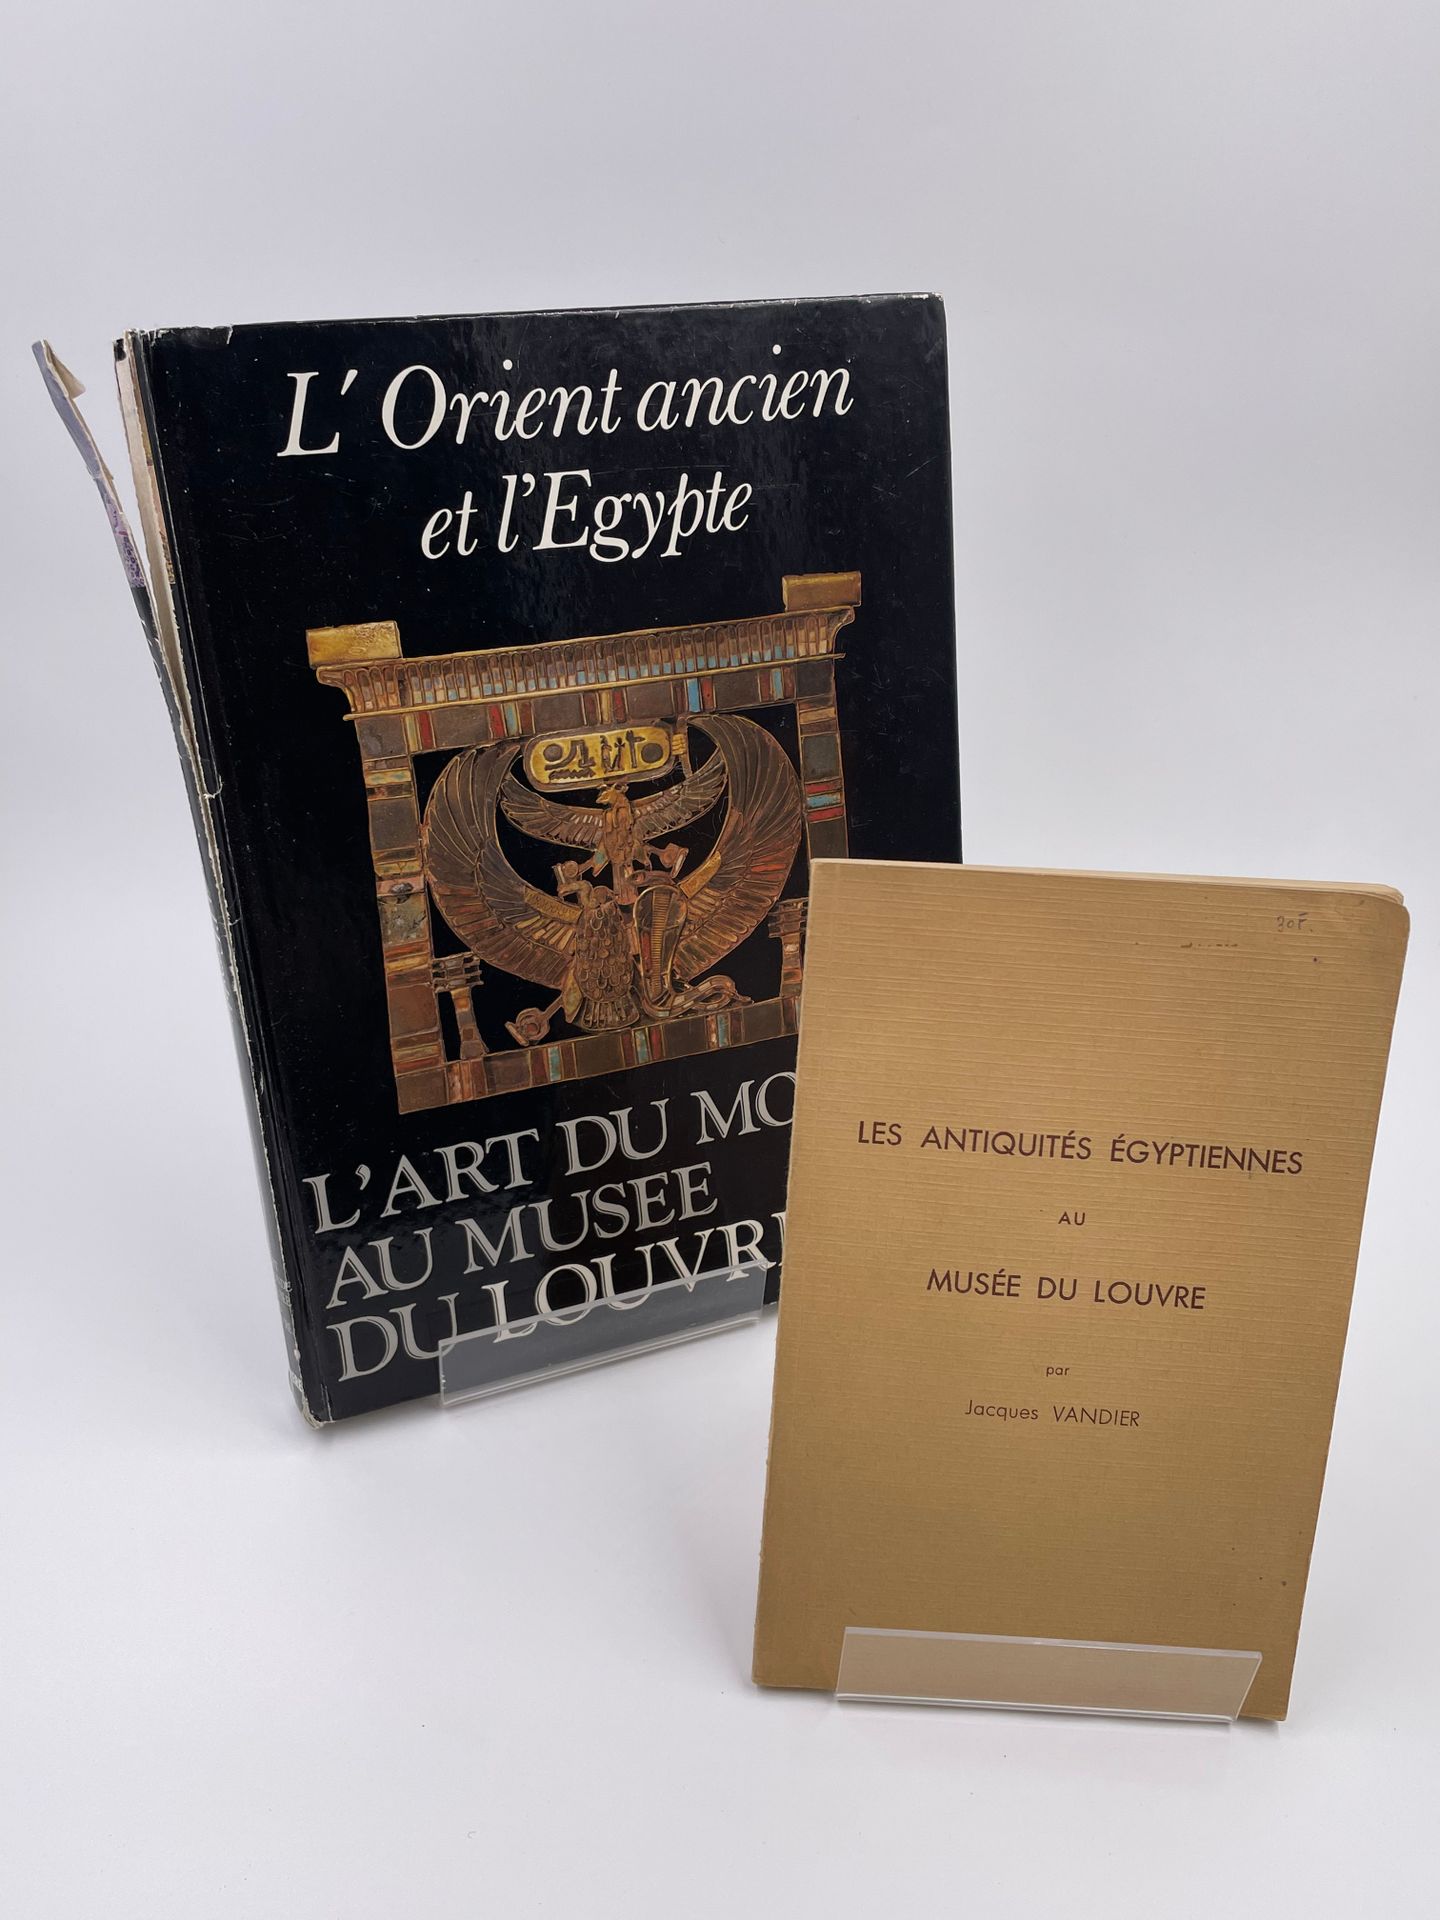 Null 2 Bände : 
- "Les Antiquités Égyptiennes au Musée du Louvre", Jacques Vandi&hellip;